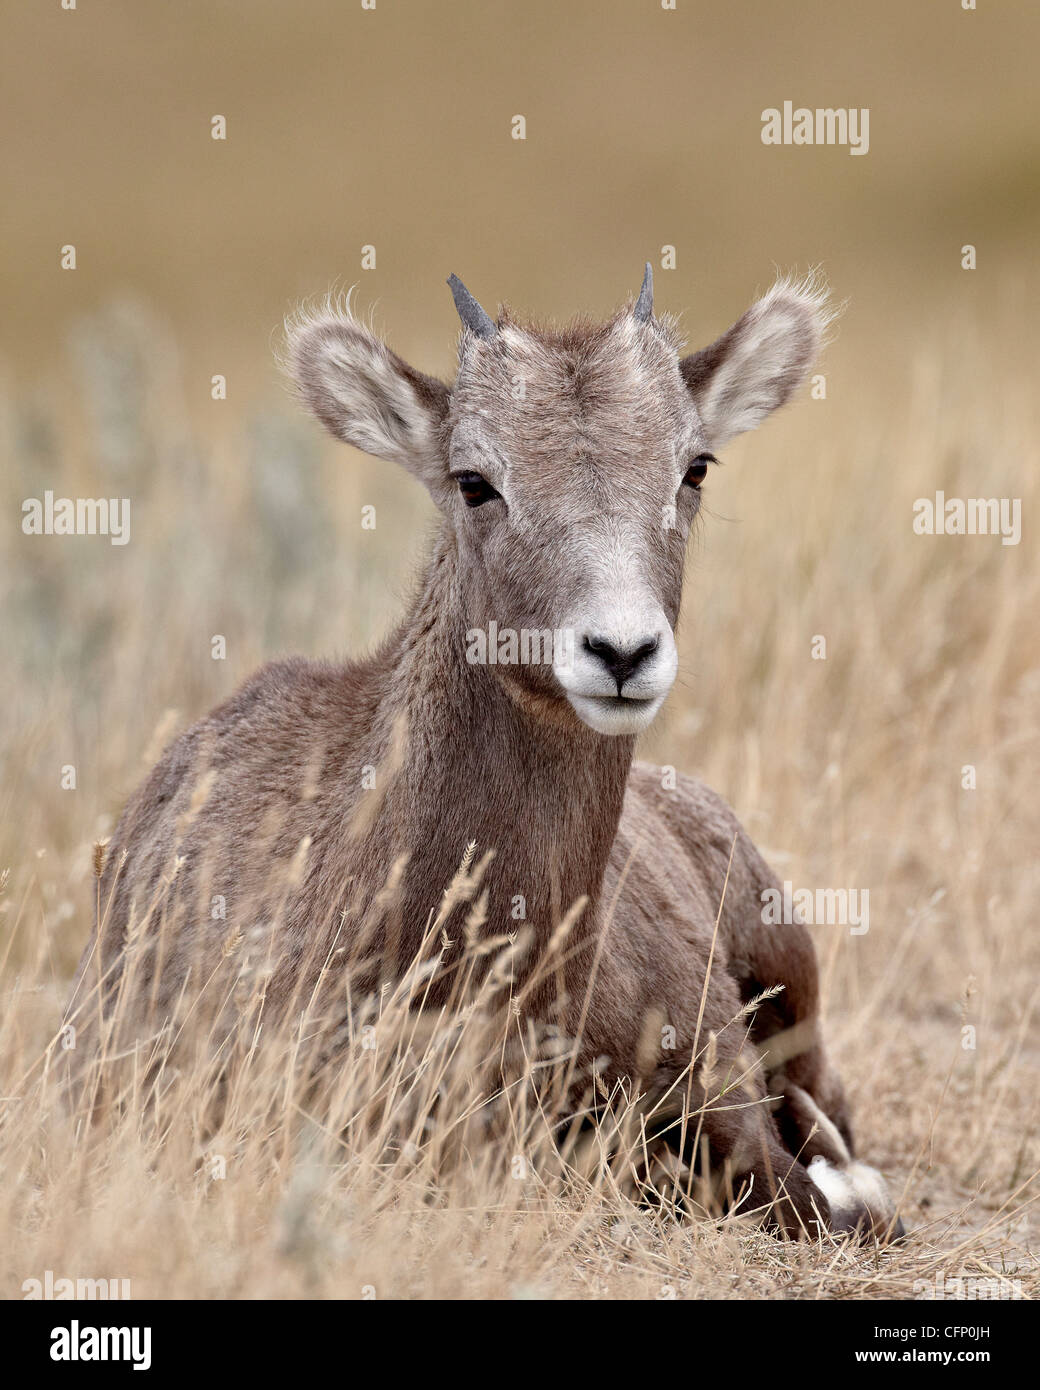 Bighorn (Ovis canadensis) agnello, Parco nazionale Badlands, Dakota del Sud, Stati Uniti d'America, America del Nord Foto Stock